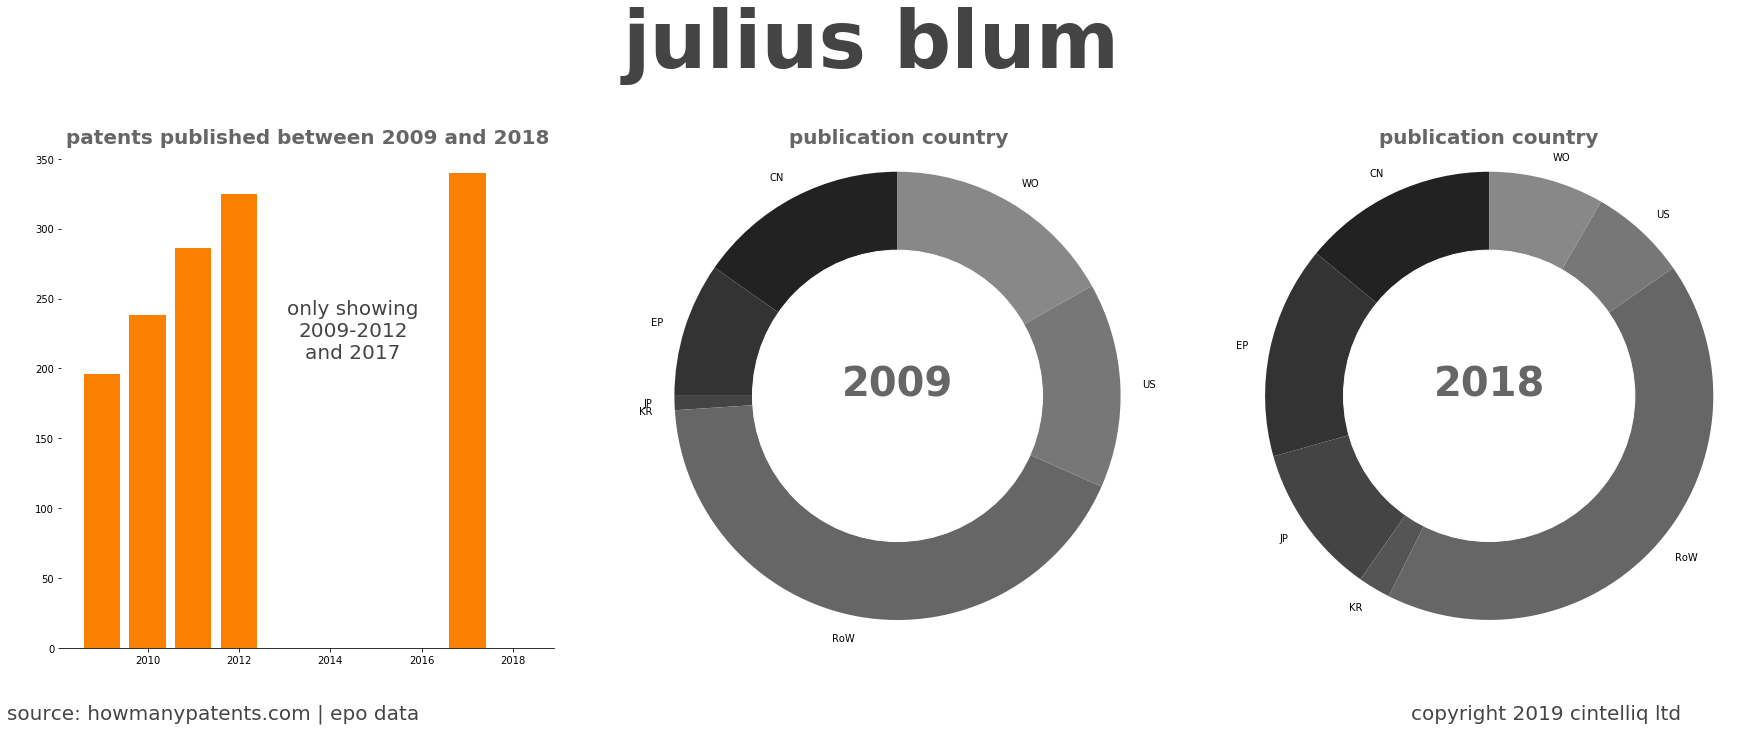 summary of patents for Julius Blum